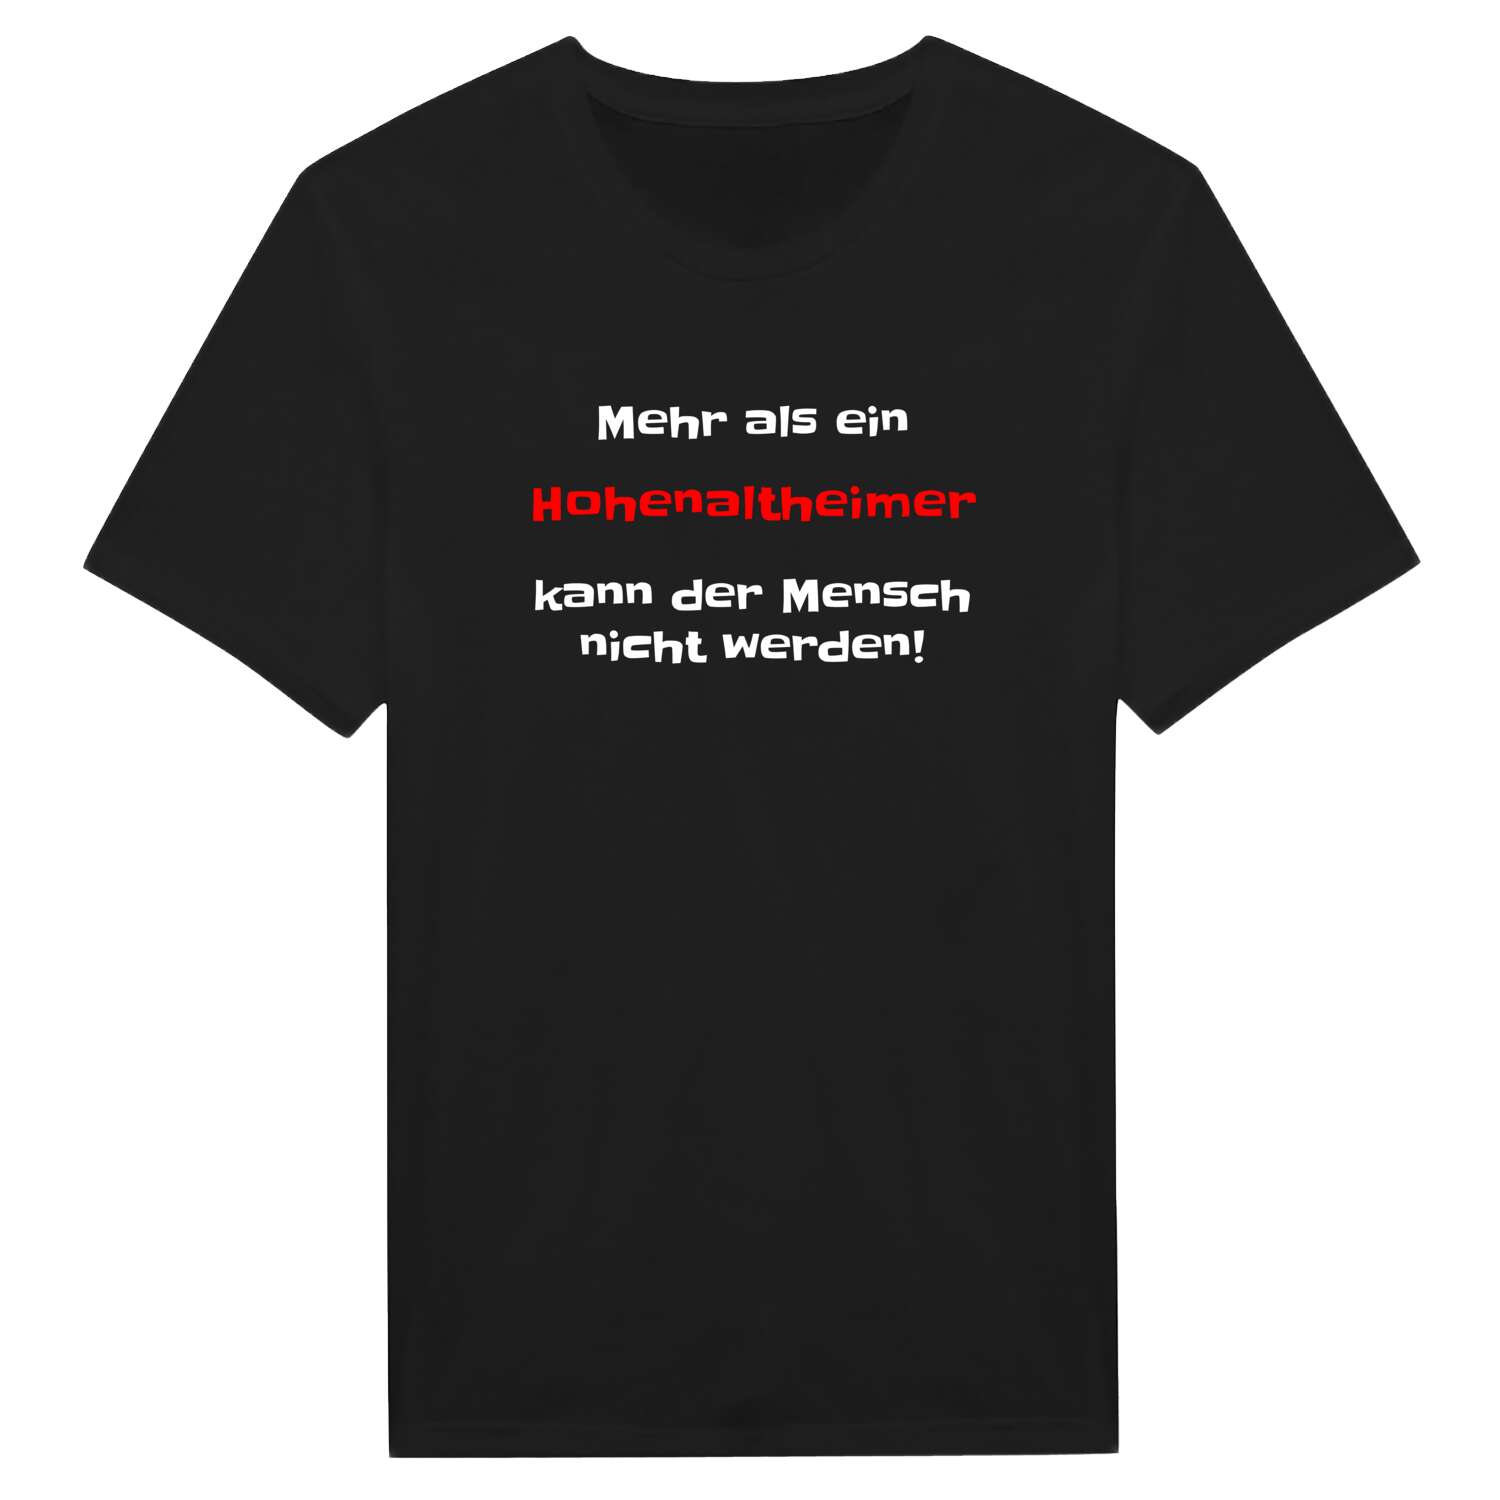 Hohenaltheim T-Shirt »Mehr als ein«